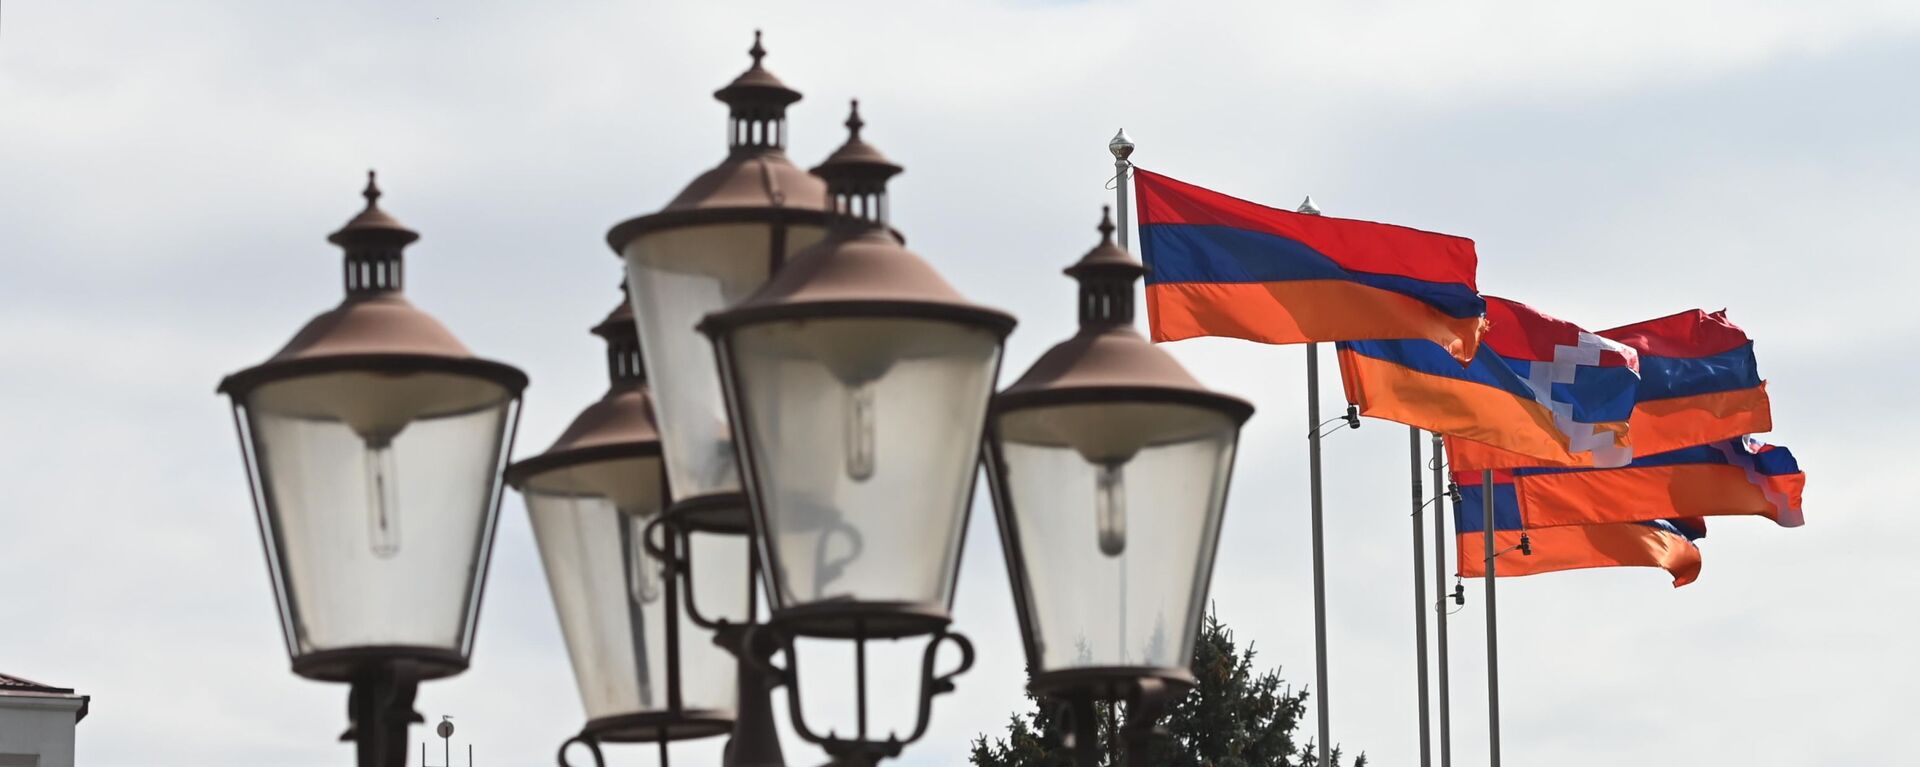 Ermenistan ve Dağlık Karabağ bayrakları - Sputnik Türkiye, 1920, 09.09.2021